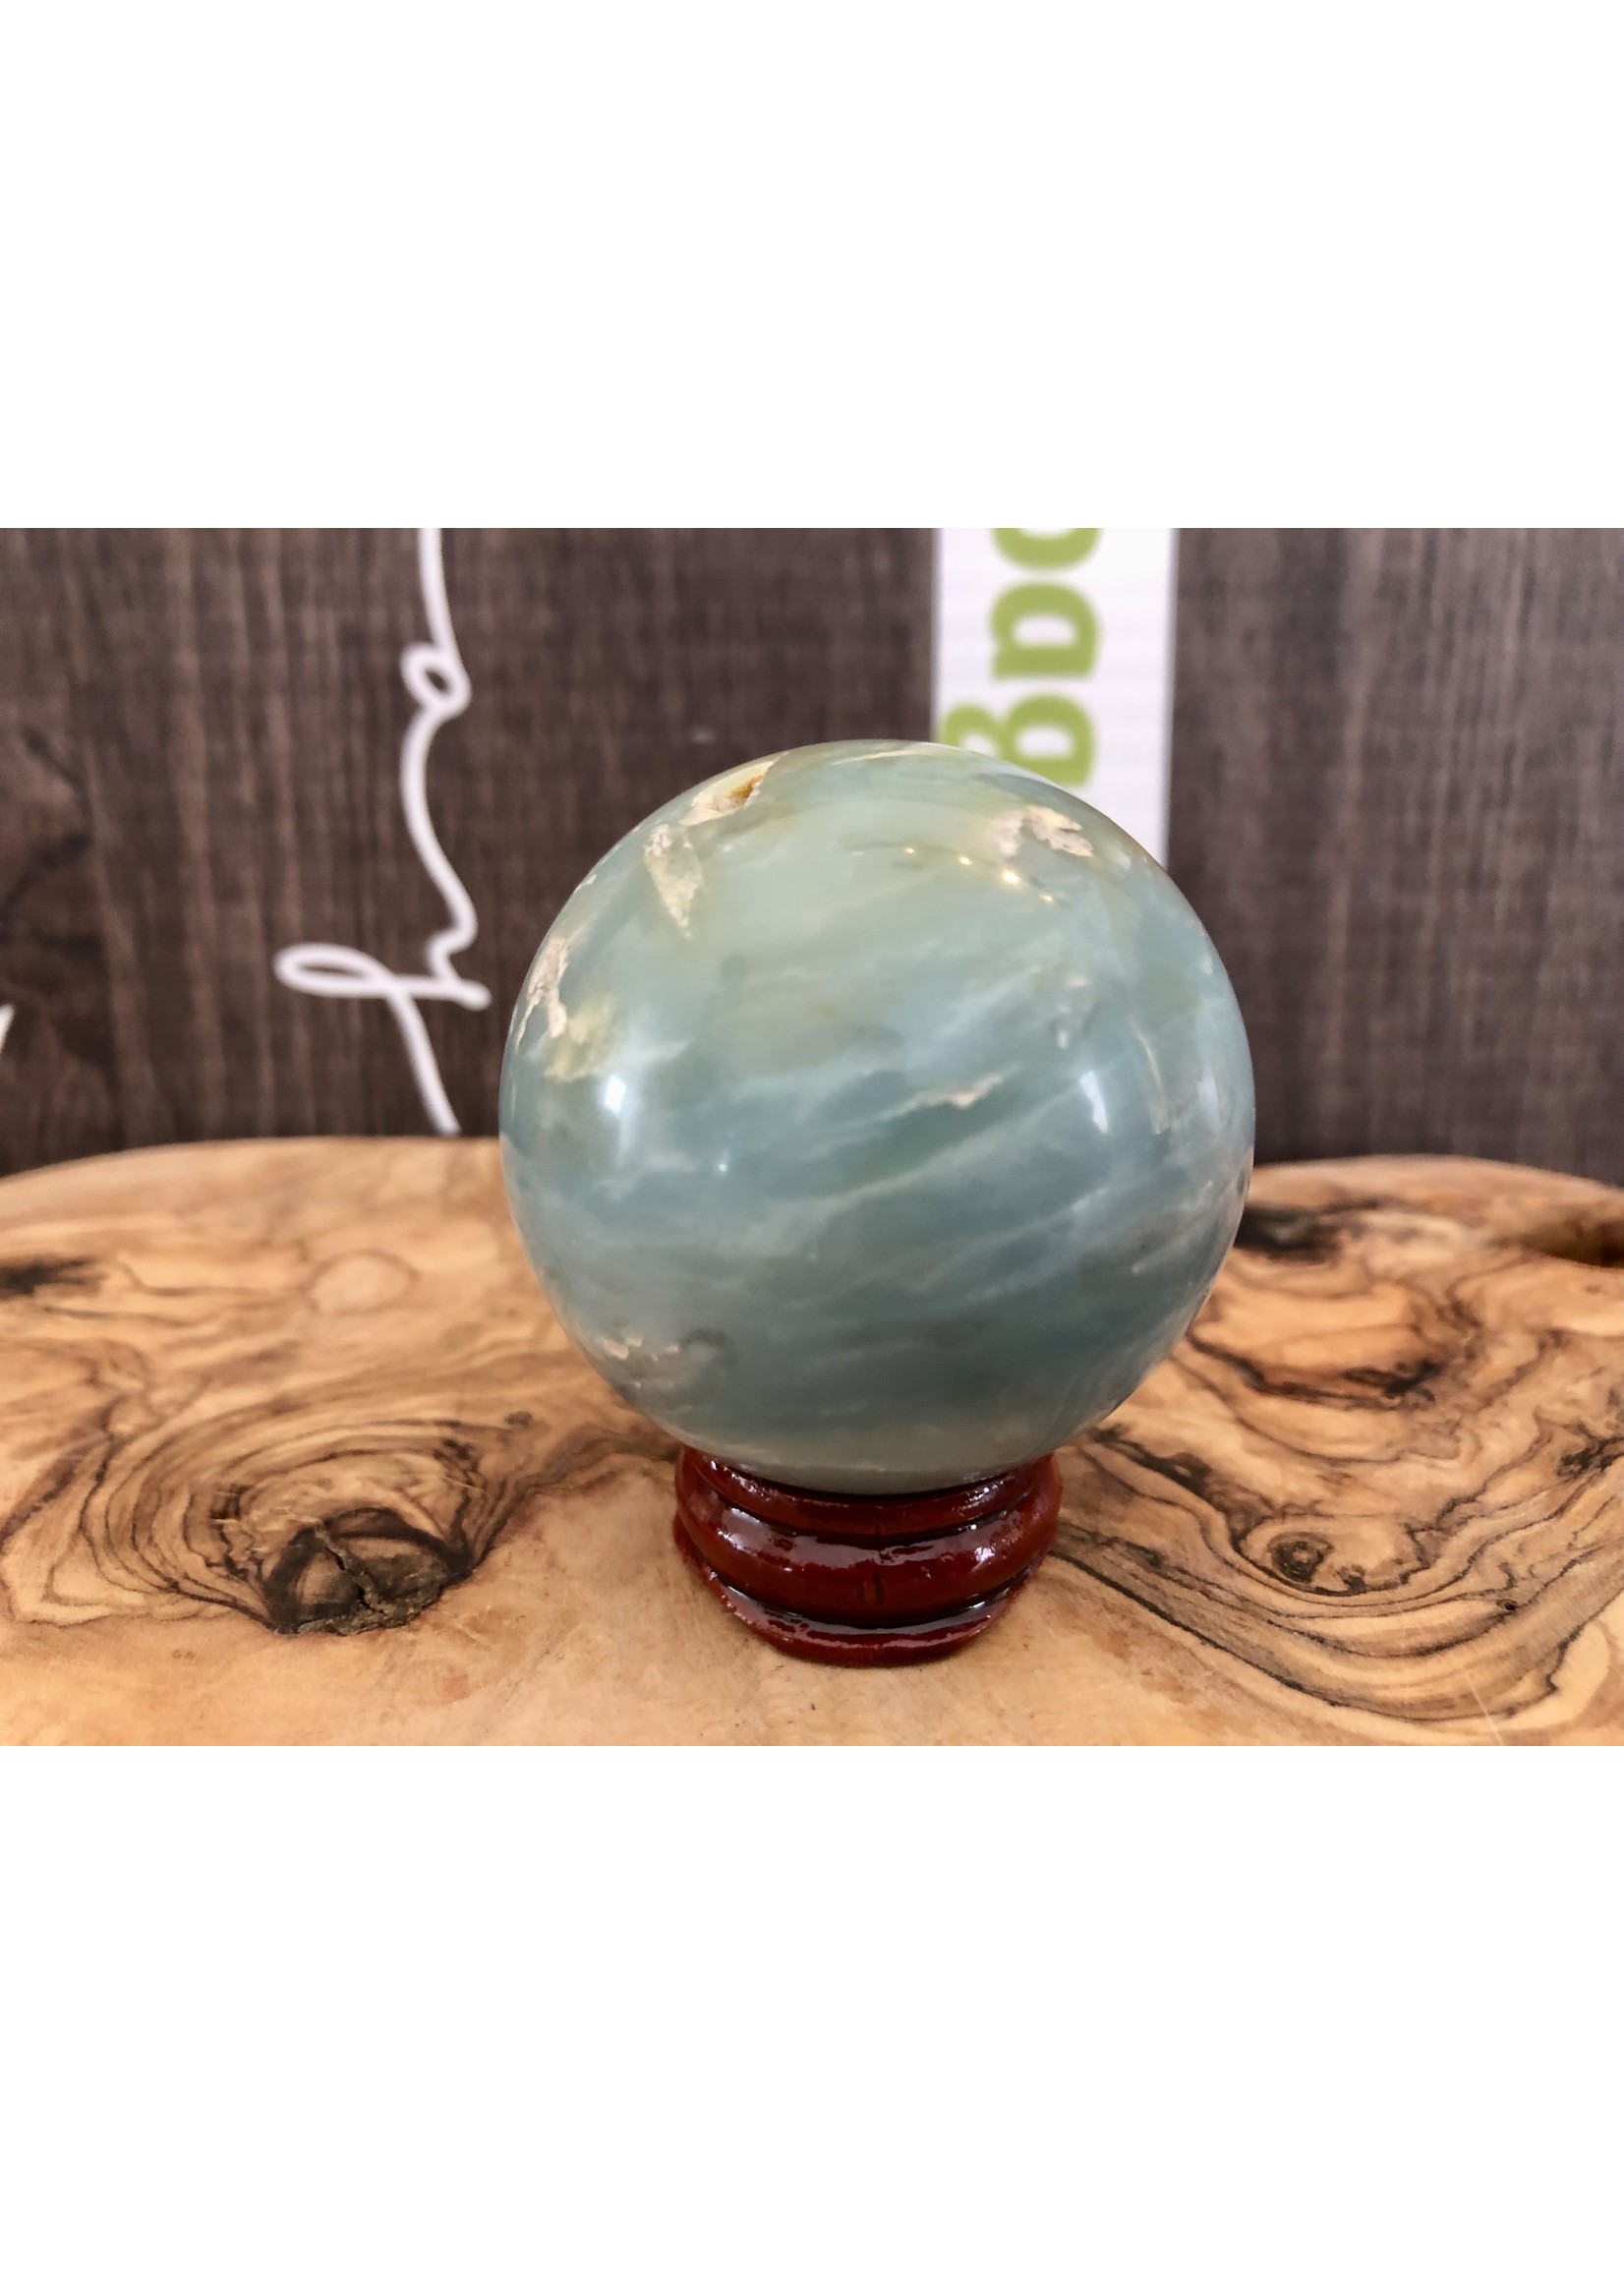 large calcite caraïbe sphère, ressemble à un globe terrestre,  purifie et aligne les chakras, équilibre les énergies yin et yang